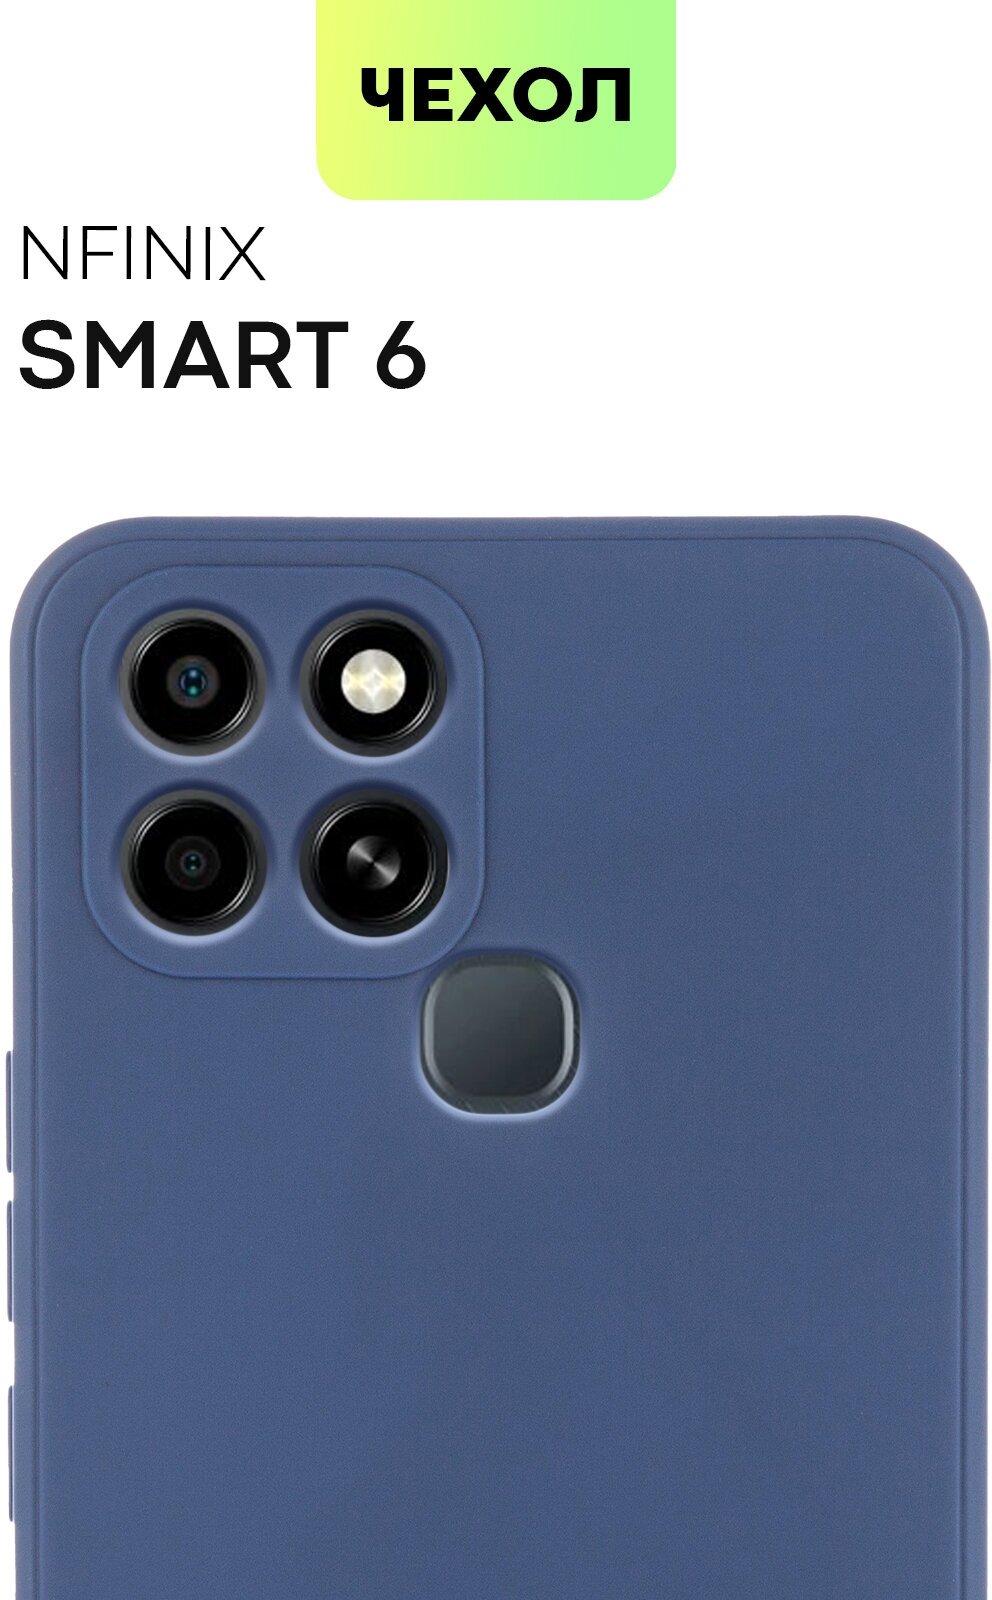 Чехол для Infinix Smart 6, Smart 6 HD (Инфиникс Смарт 6, Смарт 6 HD) тонкий, силиконовый чехол, матовое покрытие, защита модуля камер, синий, BROSCORP